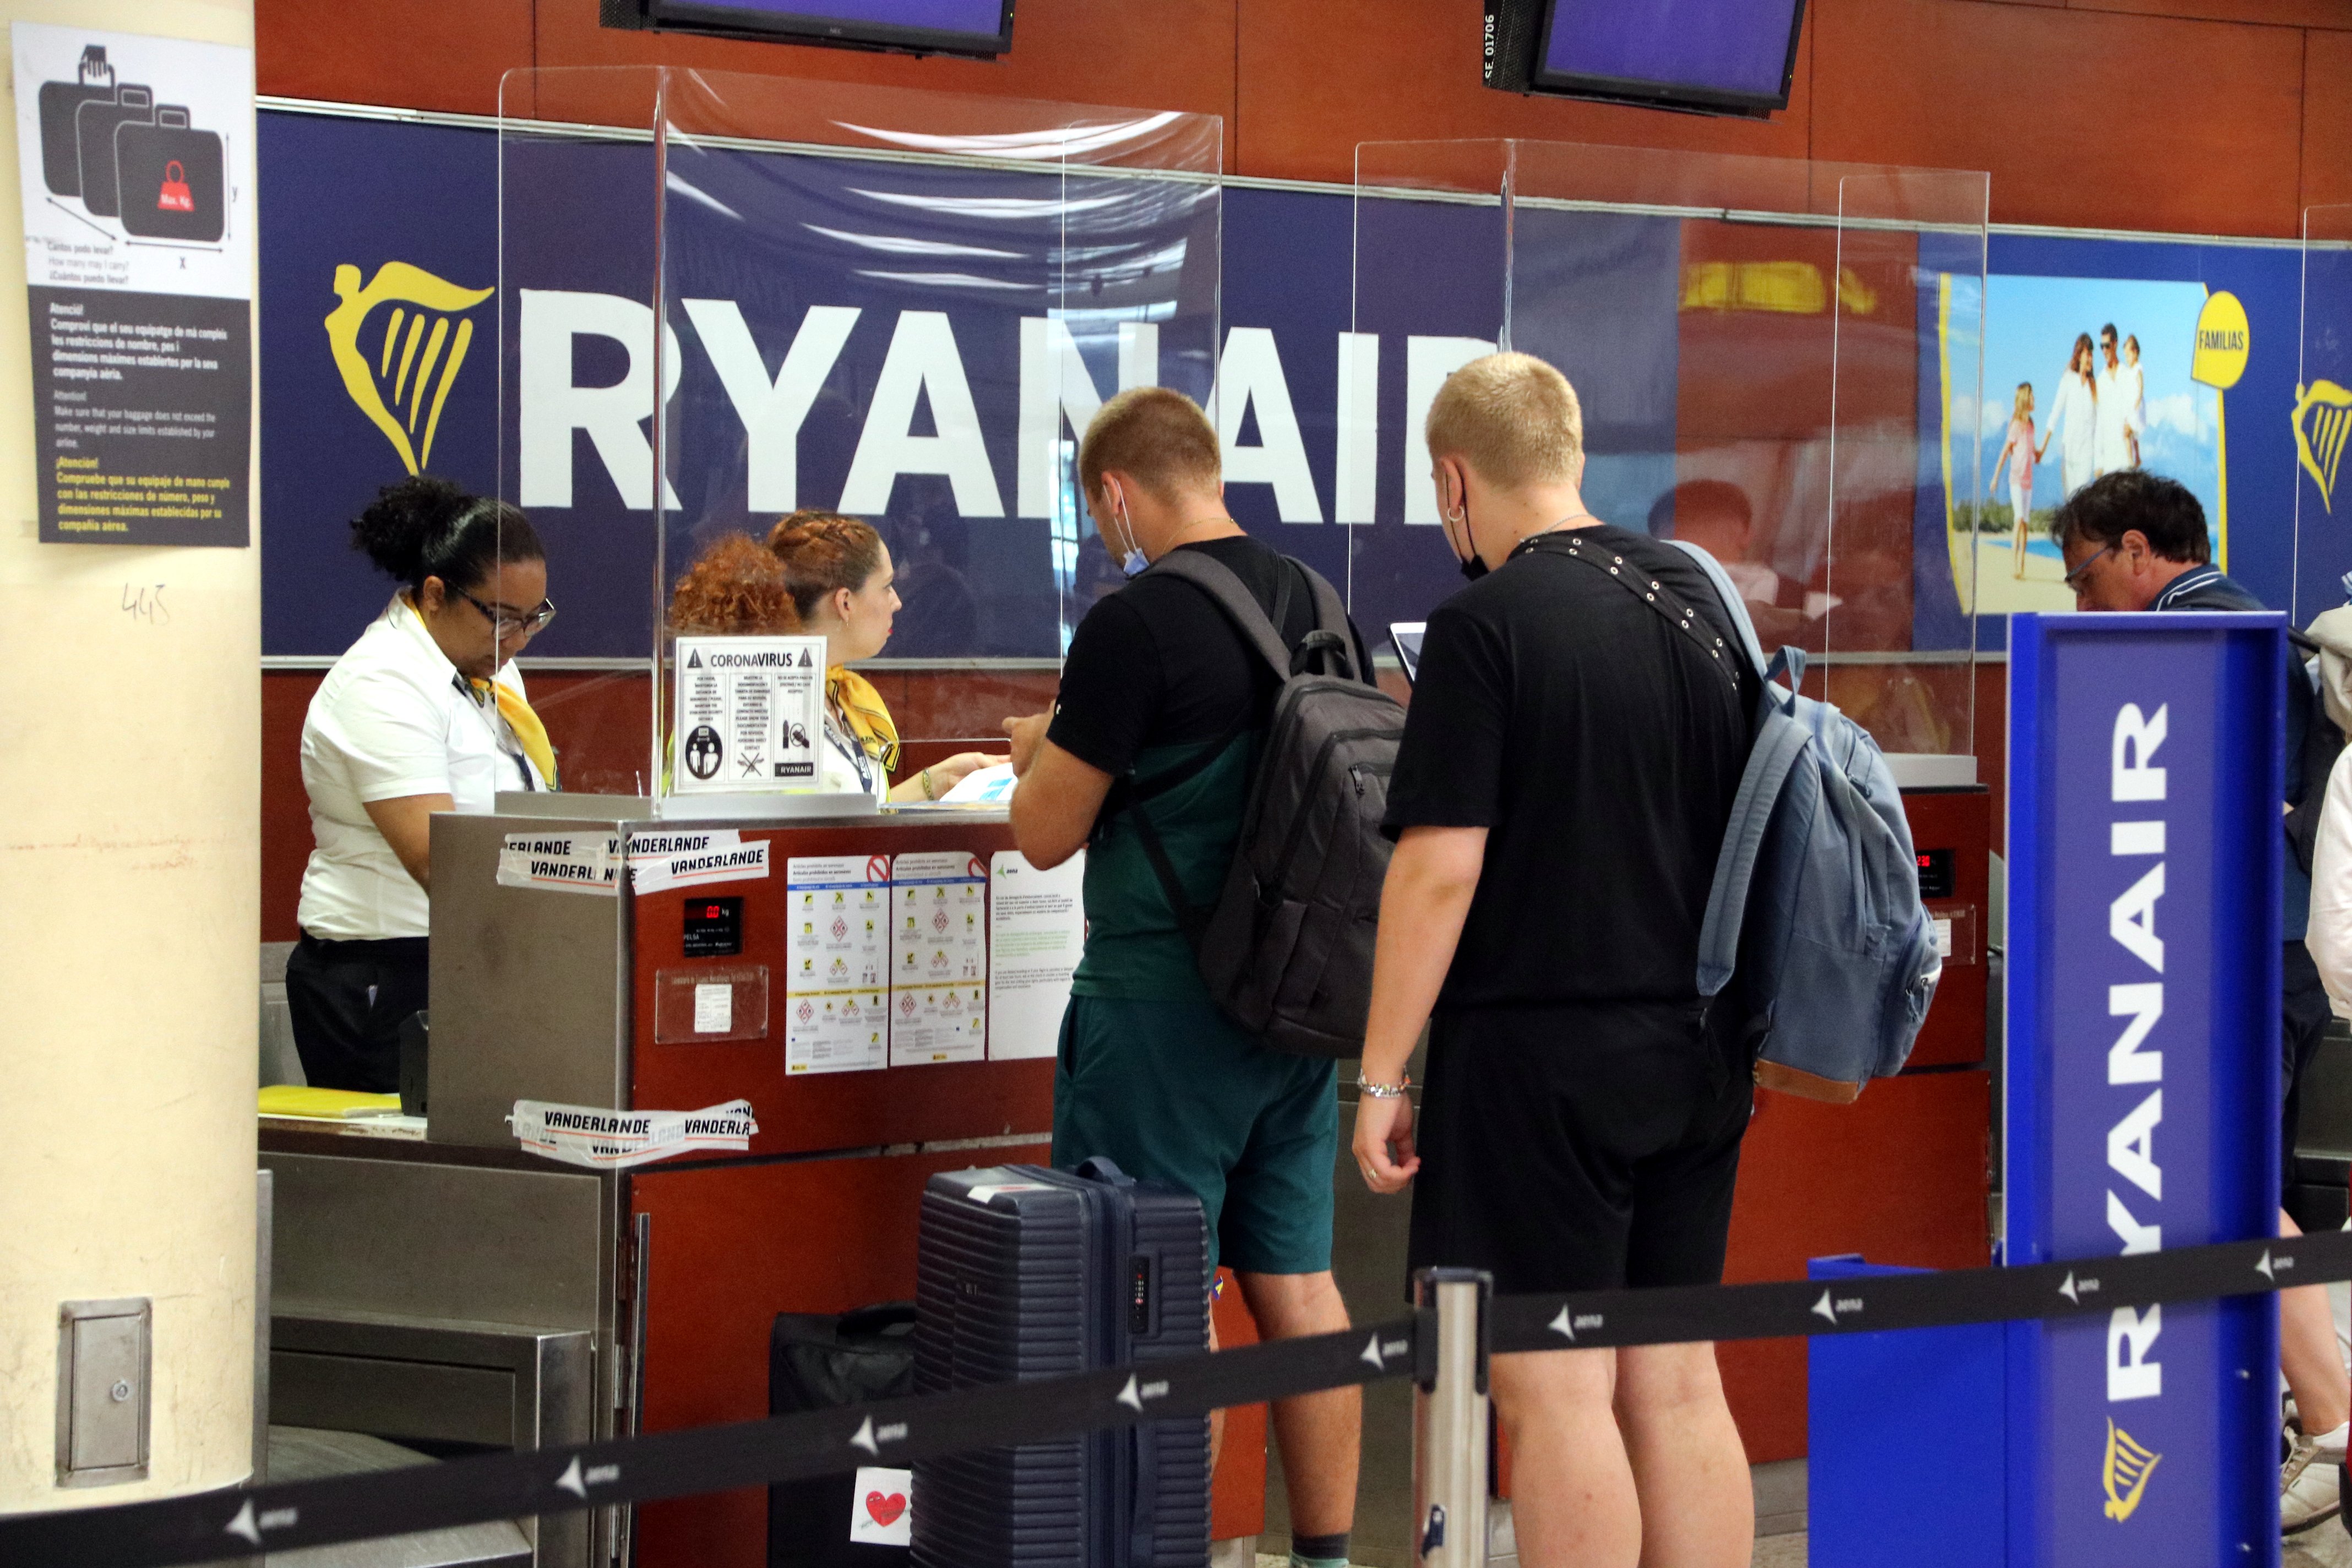 Ningún vuelo cancelado en el aeropuerto de El Prat por la huelga de Ryanair